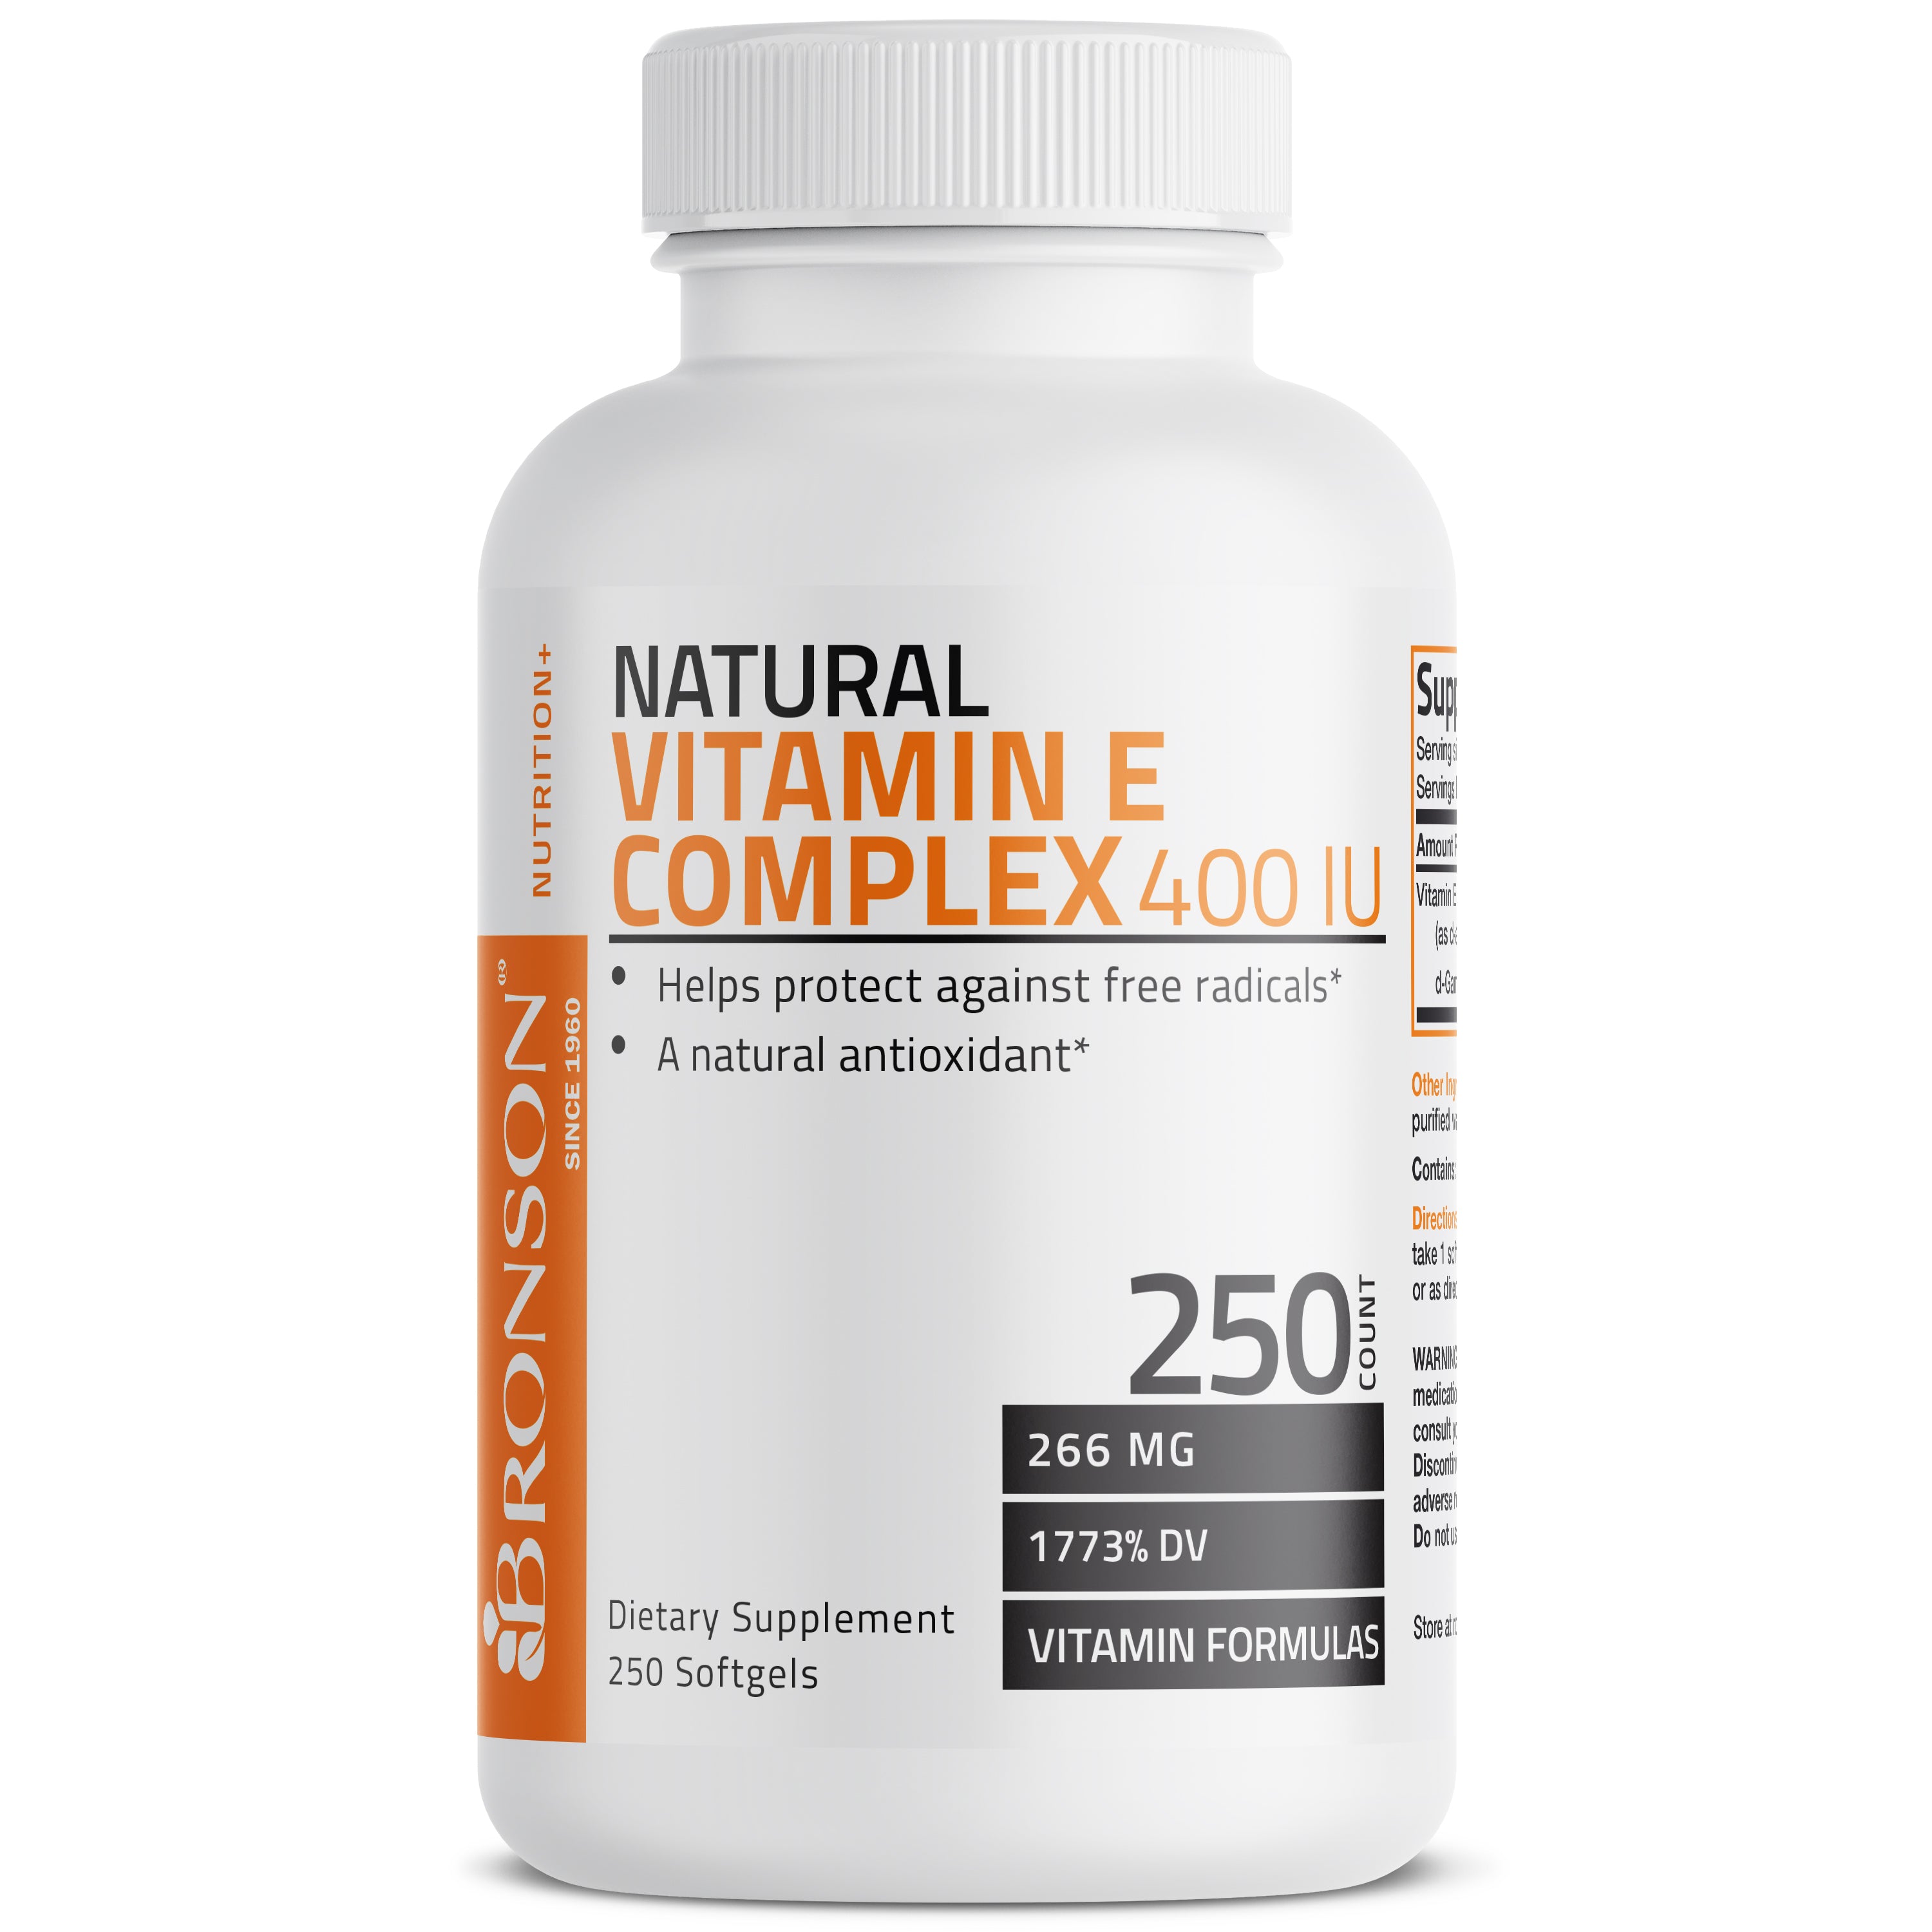 Natural Vitamin E Complex - 400 IU view 5 of 8